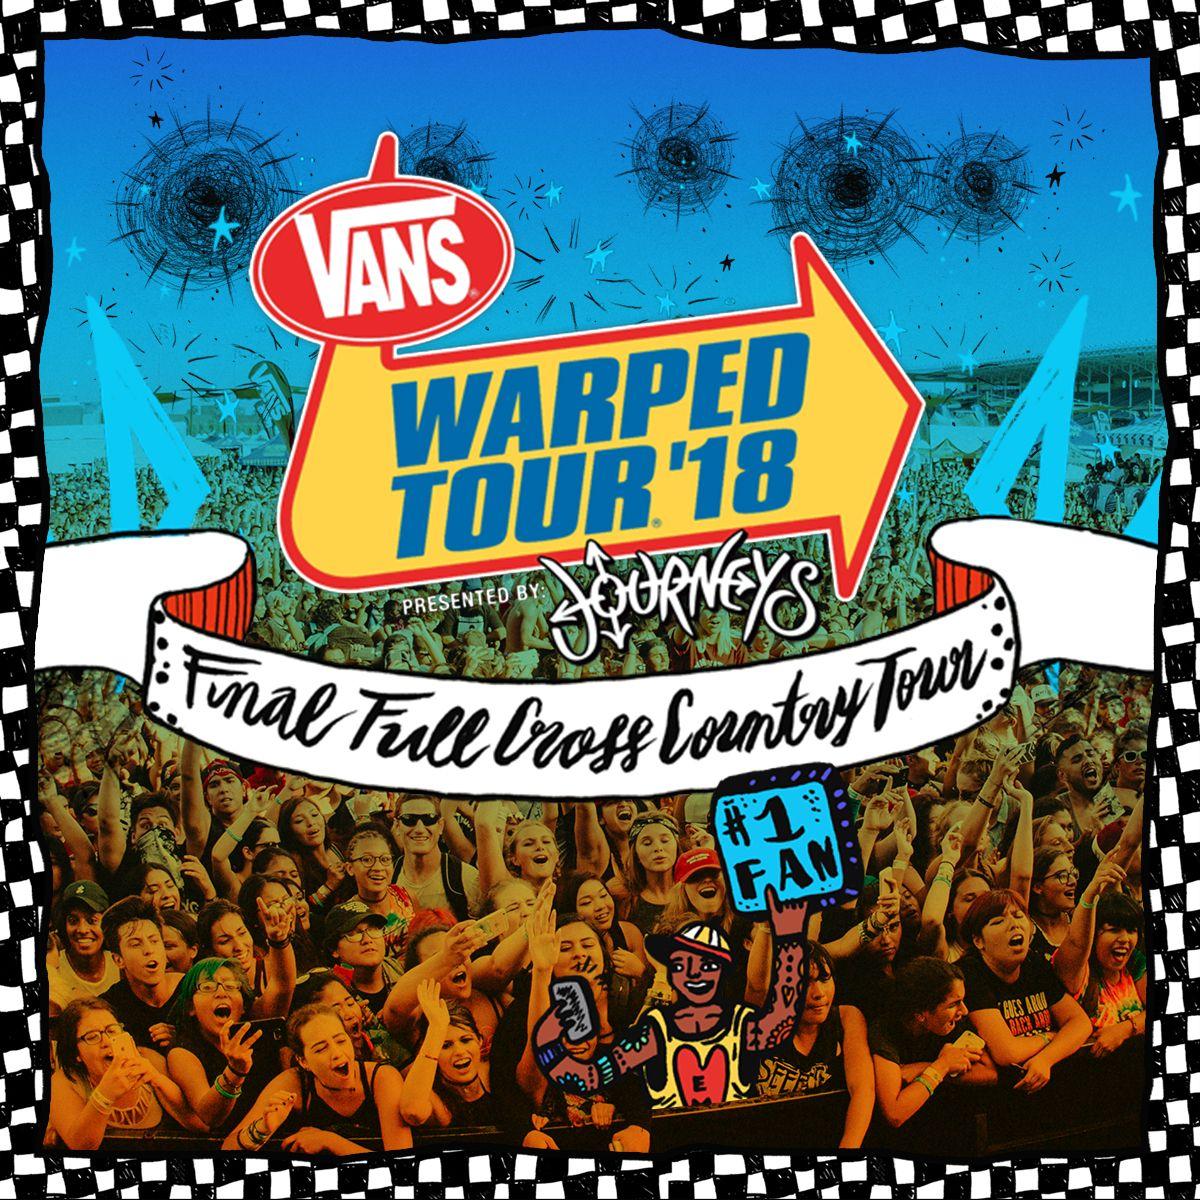 Vans Warped Tour Logo - Vans Warped Tour | Official site. Contains recent news, tour dates ...